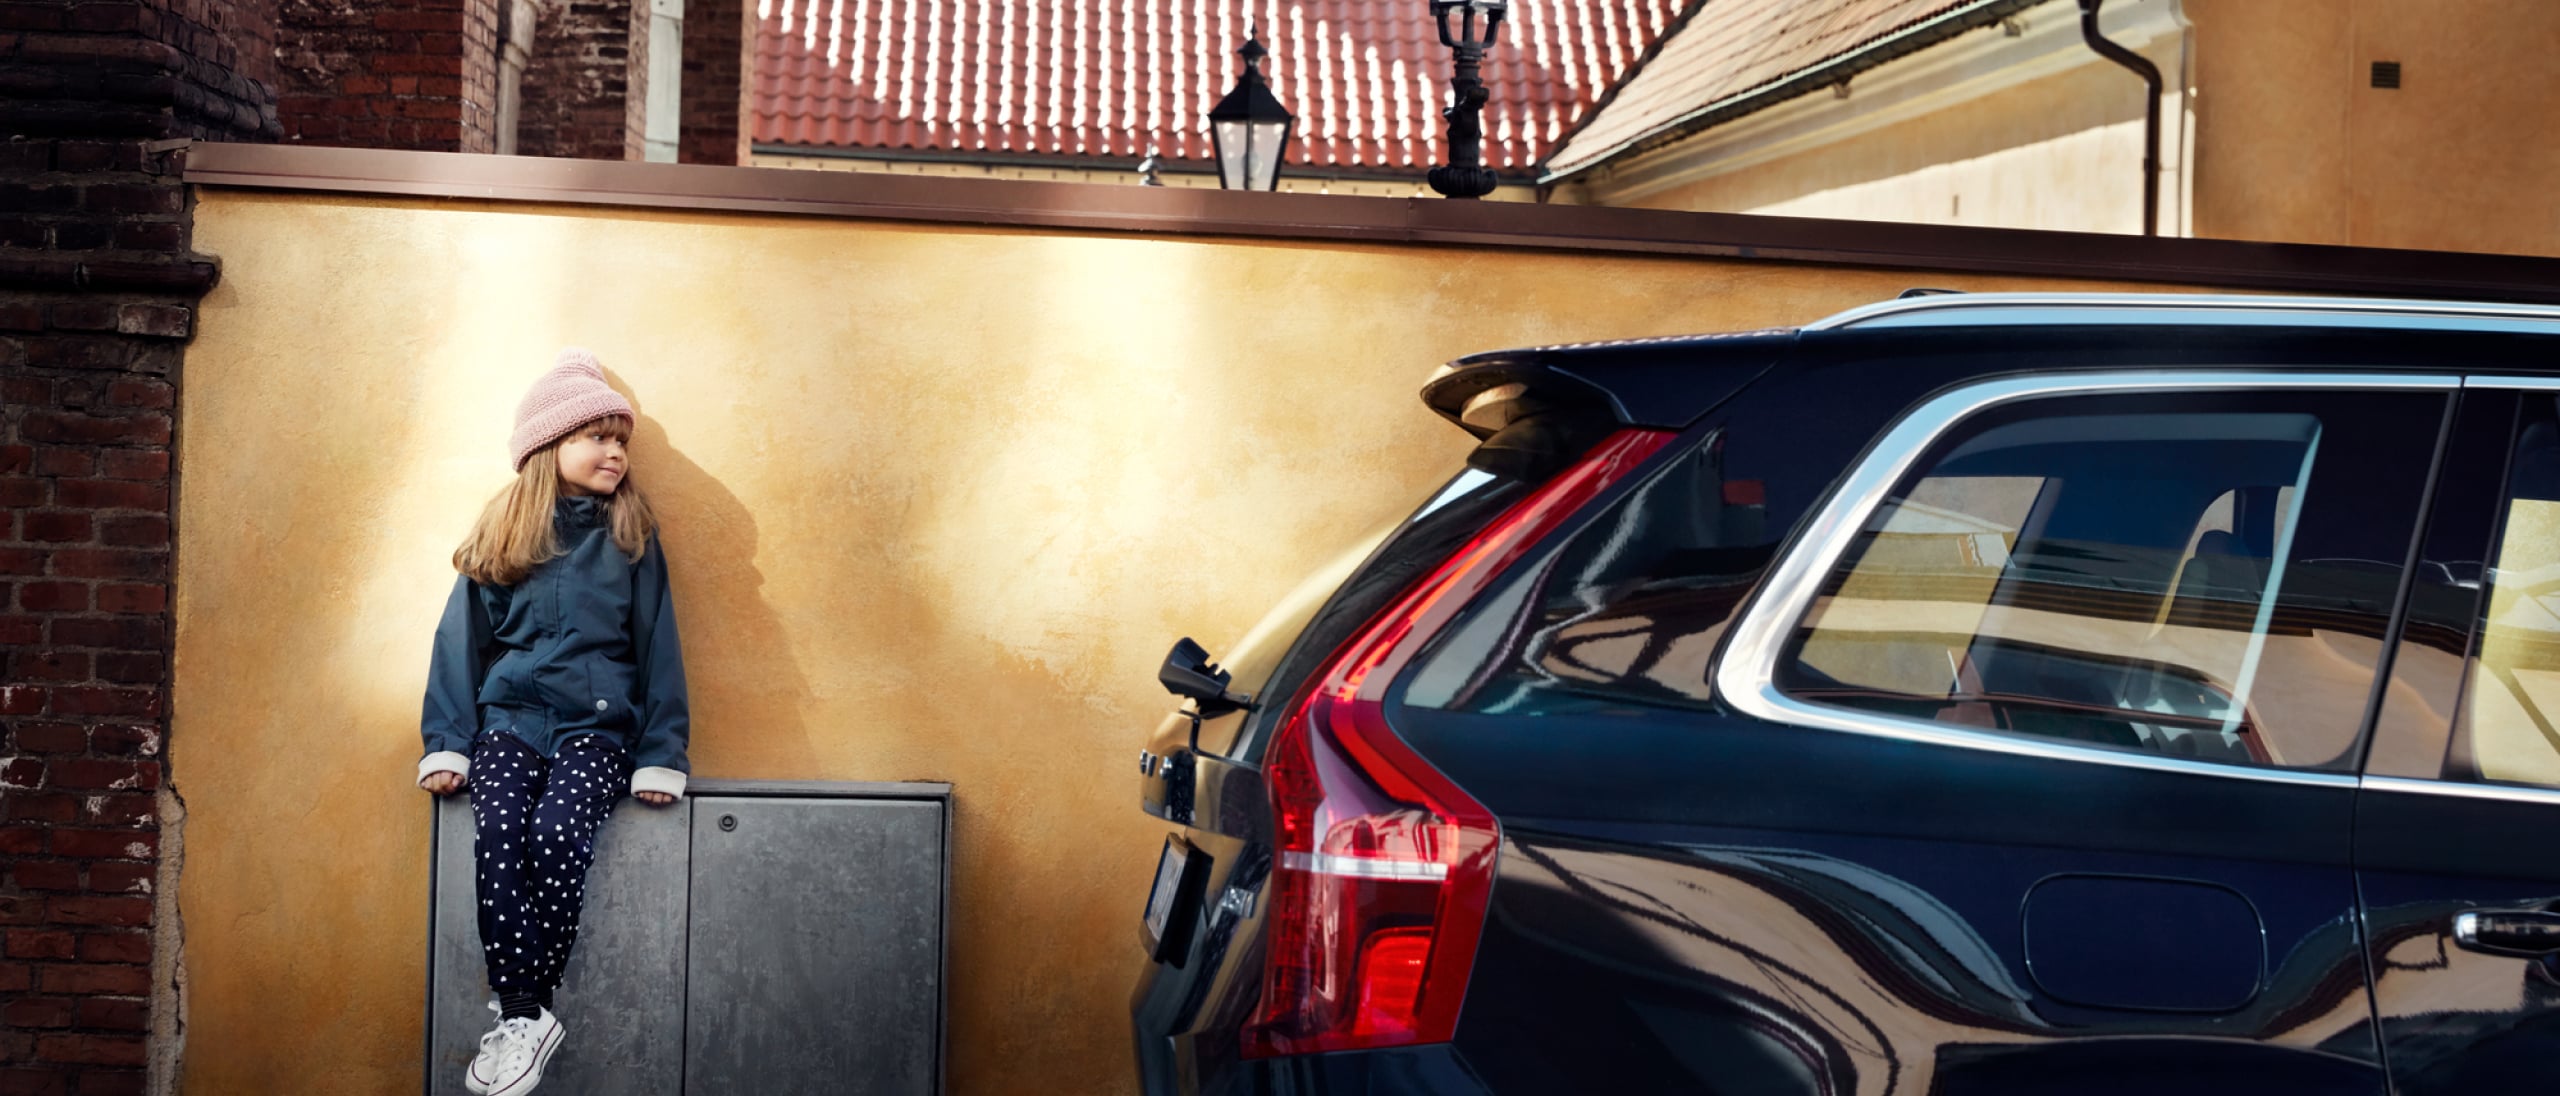 Uma criança sentada e apoiada numa parede, junto a um Volvo preto estacionado.